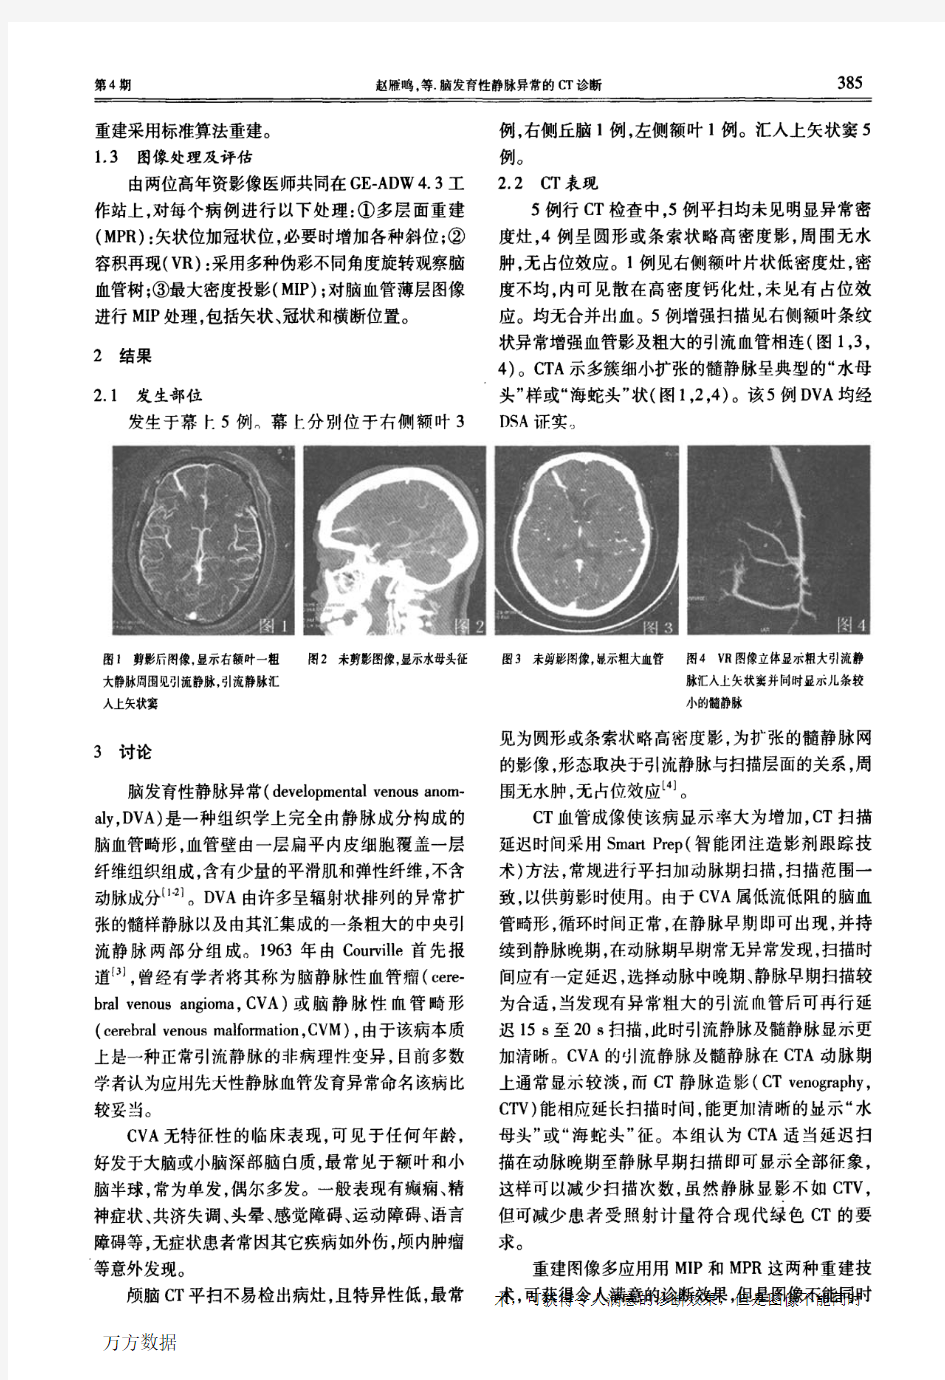 脑发育性静脉异常的CT诊断